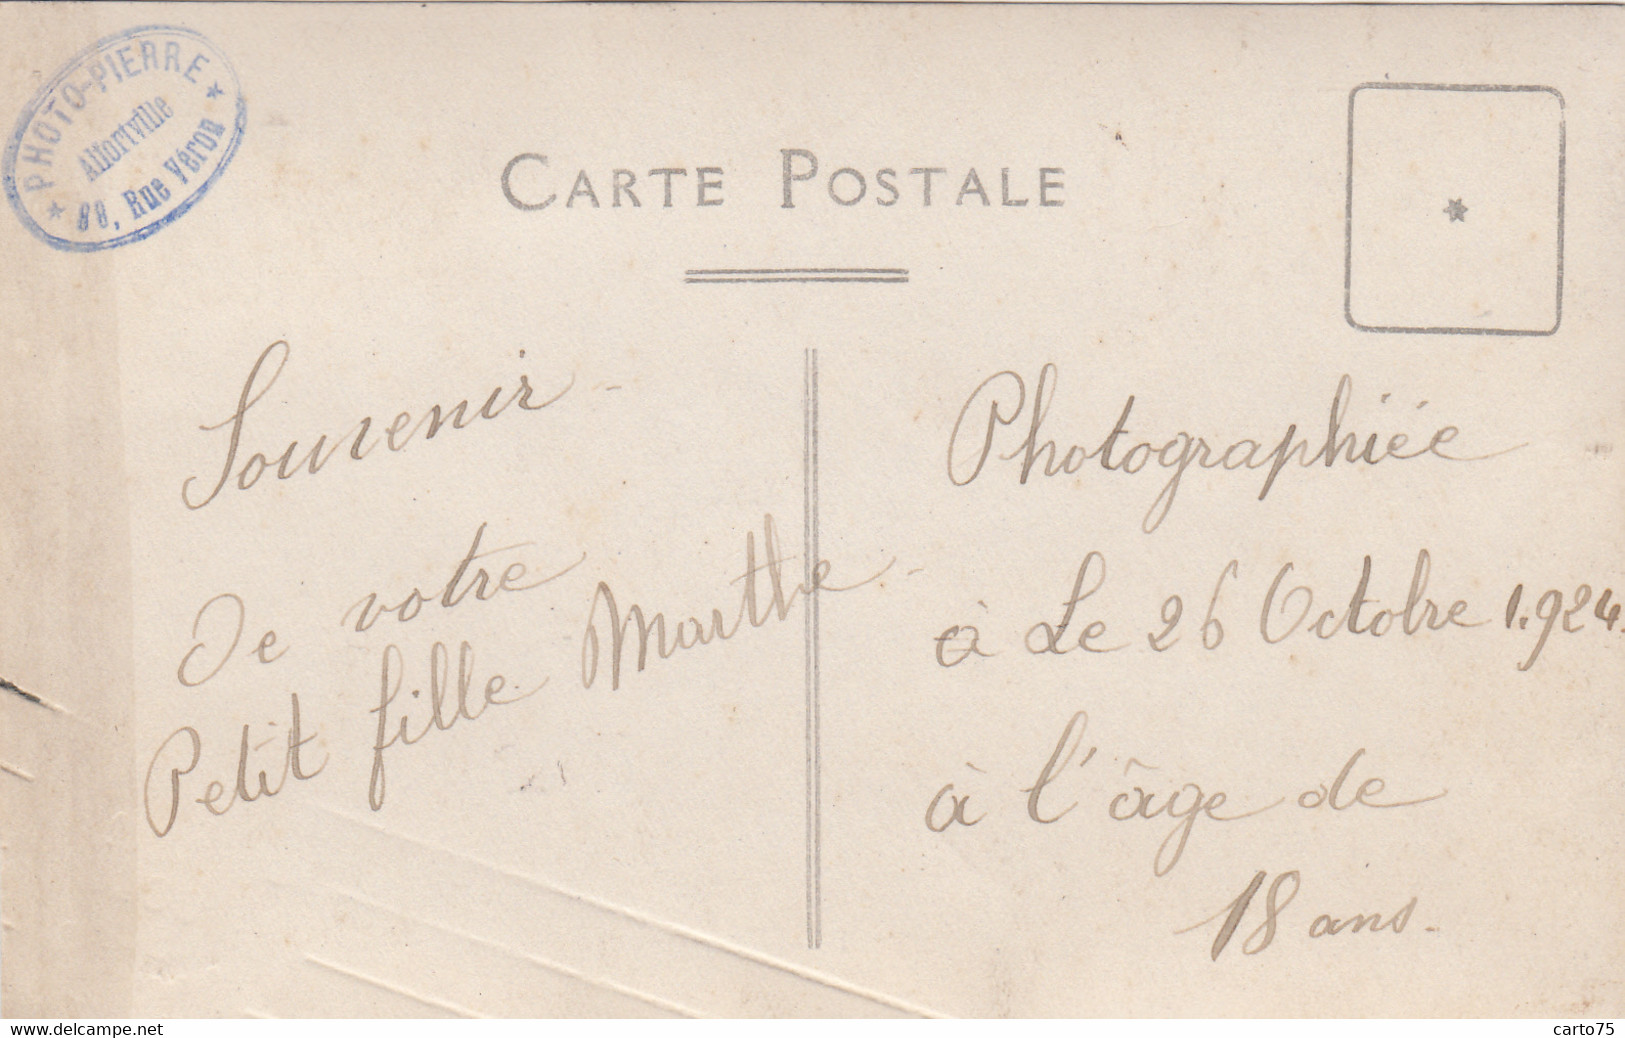 Photographie - Carte-Photo Jeune Fille - Montre Bracelet 1924 - Studio Photo-Pierre 88 Rue Véron 94 Alfortville - Fotografie